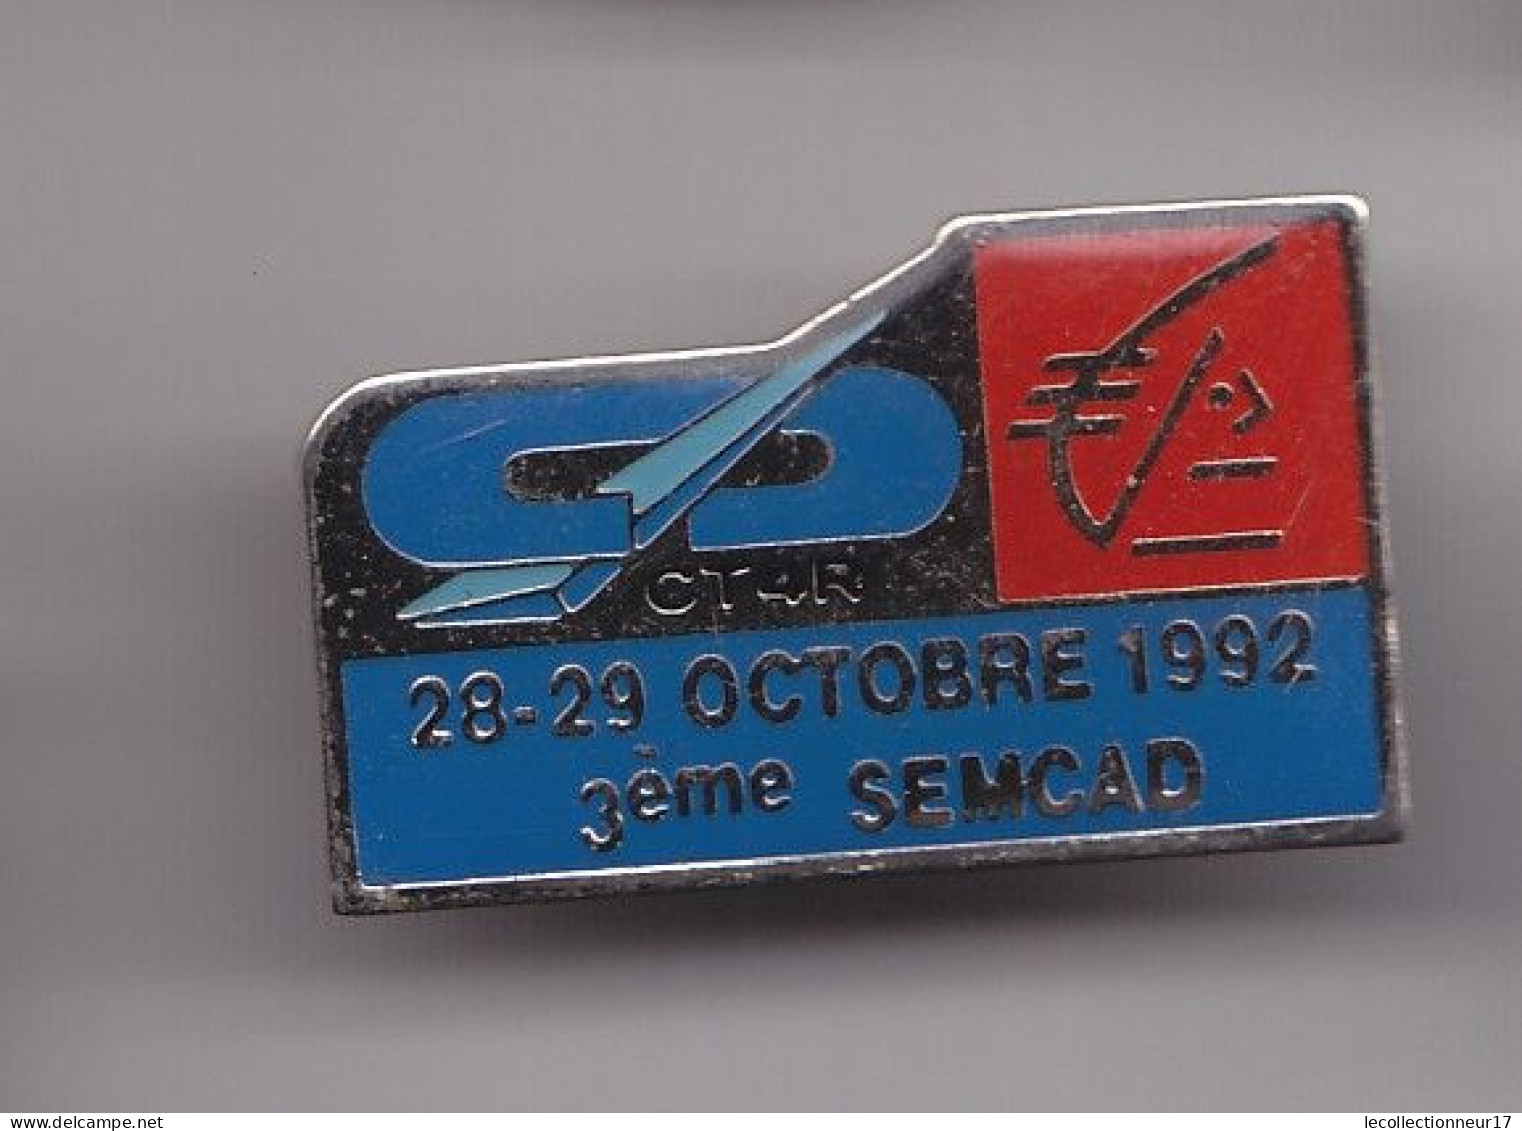 Pin's  Caisse D' Epargne Ecureuil CT4R 28-29 Octobre 1992 3ème Semcad Réf 7498JL - Banks